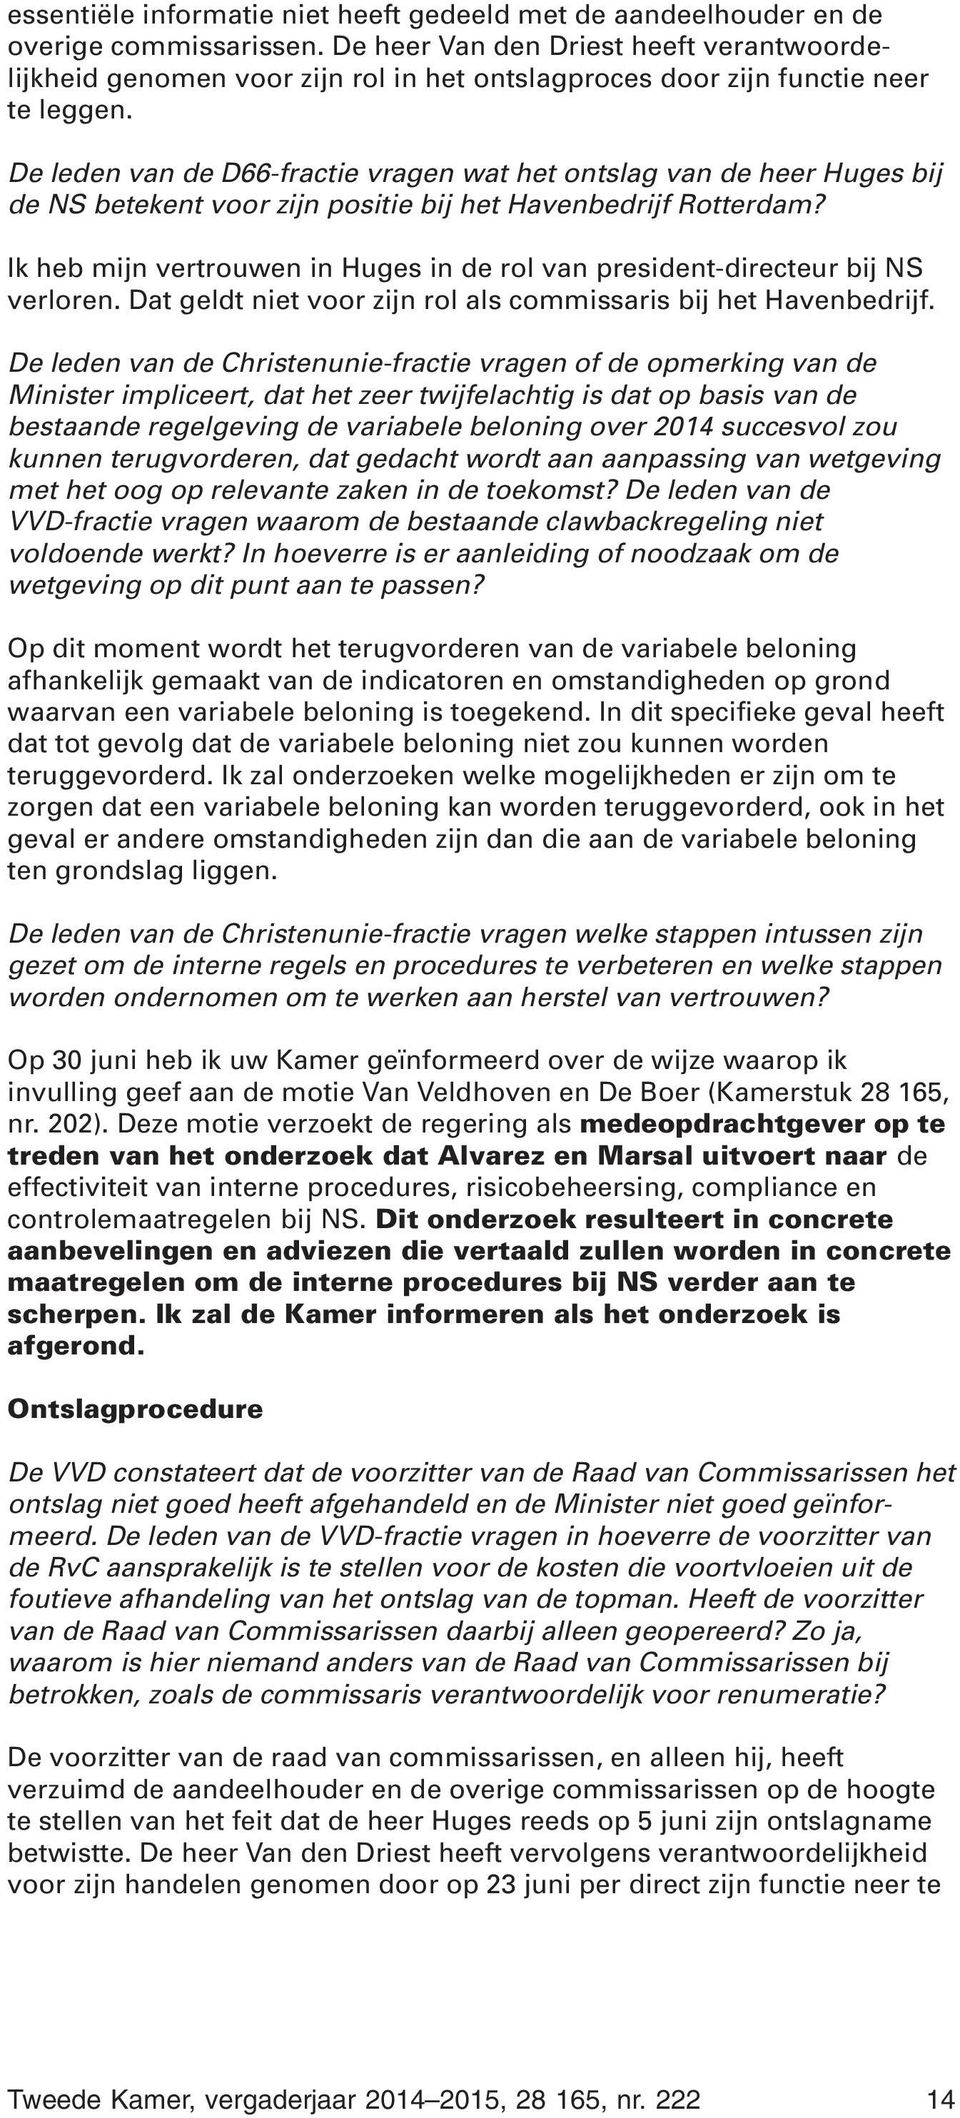 De leden van de D66-fractie vragen wat het ontslag van de heer Huges bij de NS betekent voor zijn positie bij het Havenbedrijf Rotterdam?